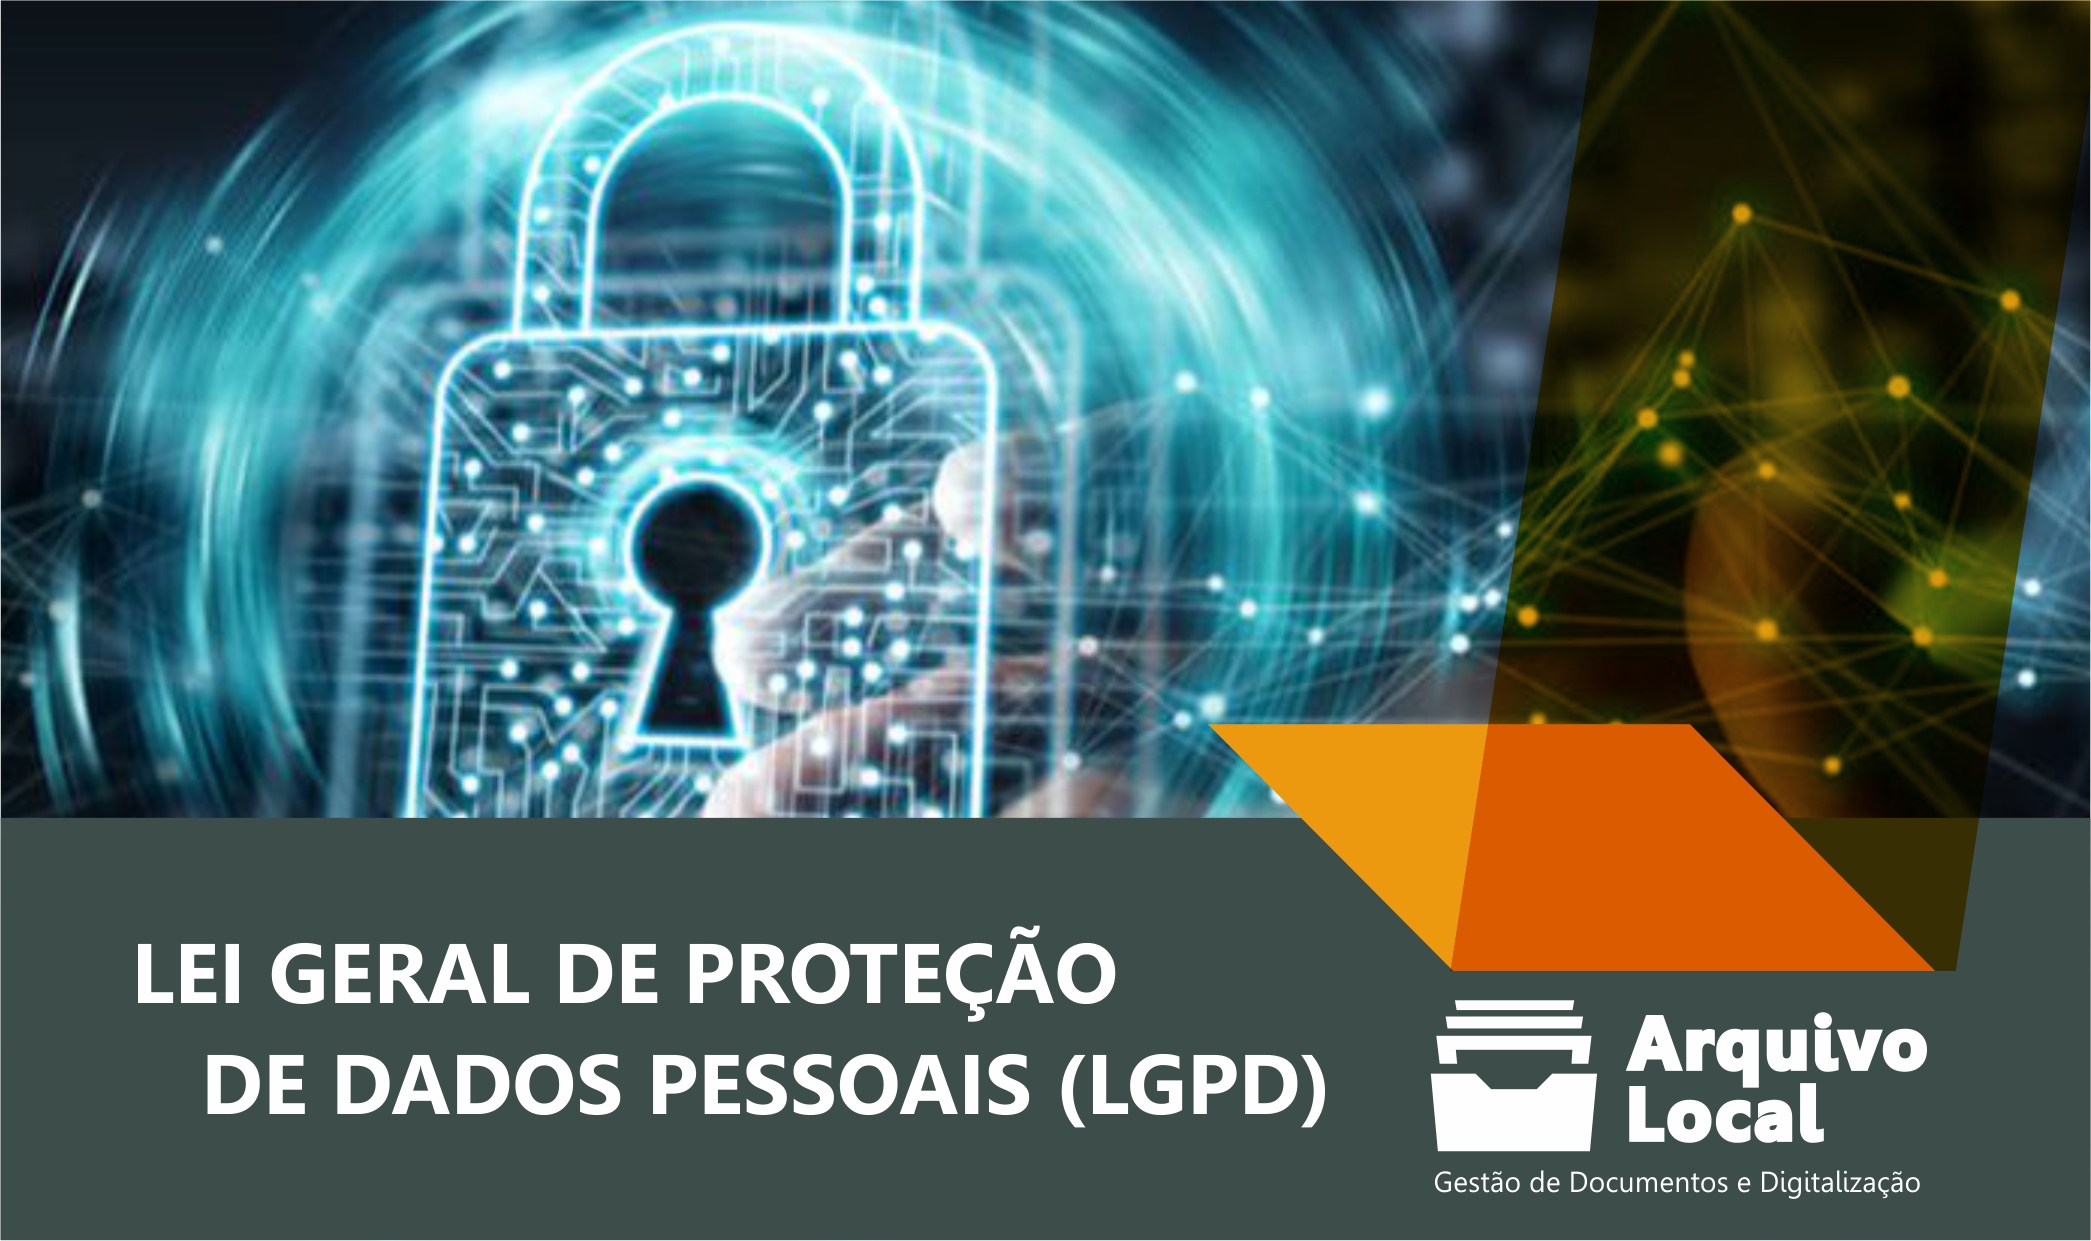 Lei geral de proteção de dados pessoais - LGPD